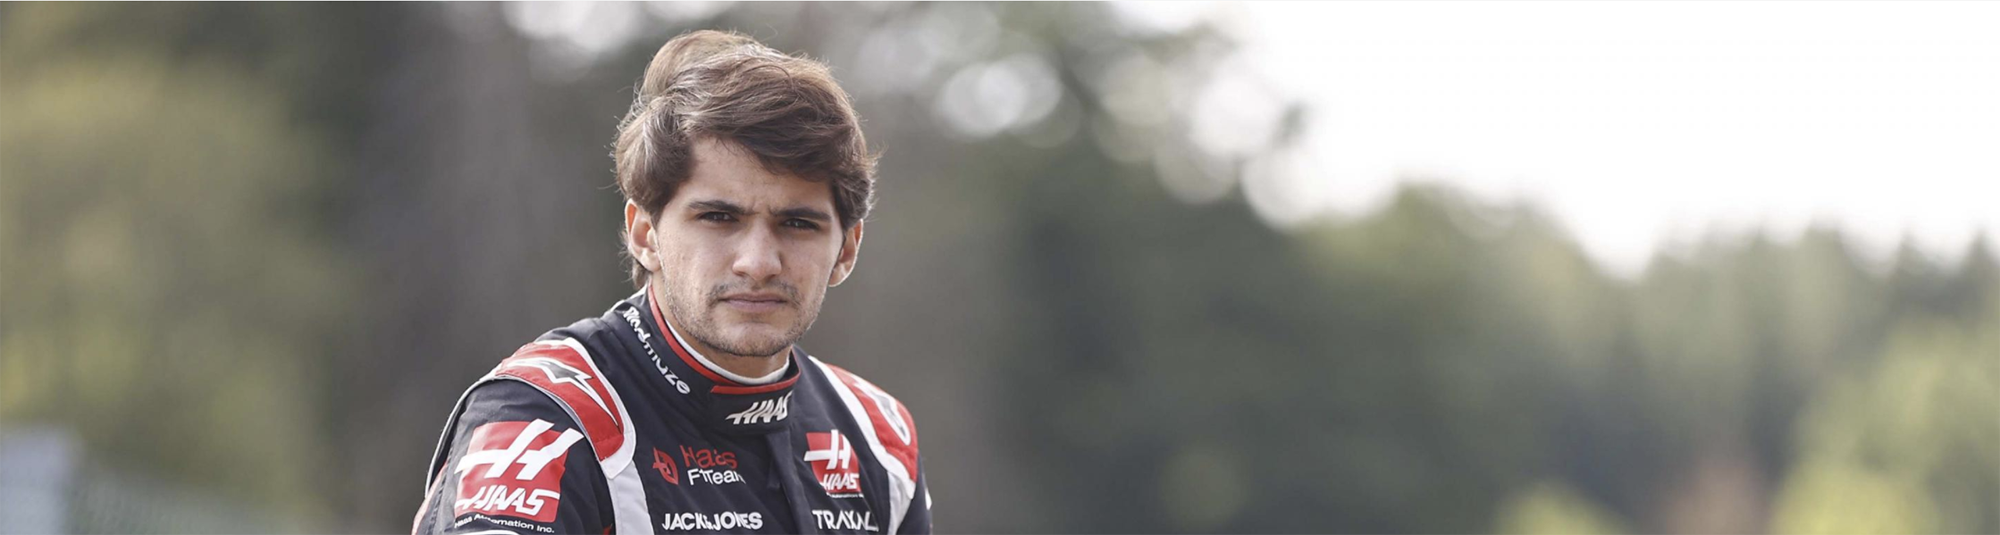 Ersättare för Grosjean till Sakhir GP, Haas F1 bekräftar Fittipaldi